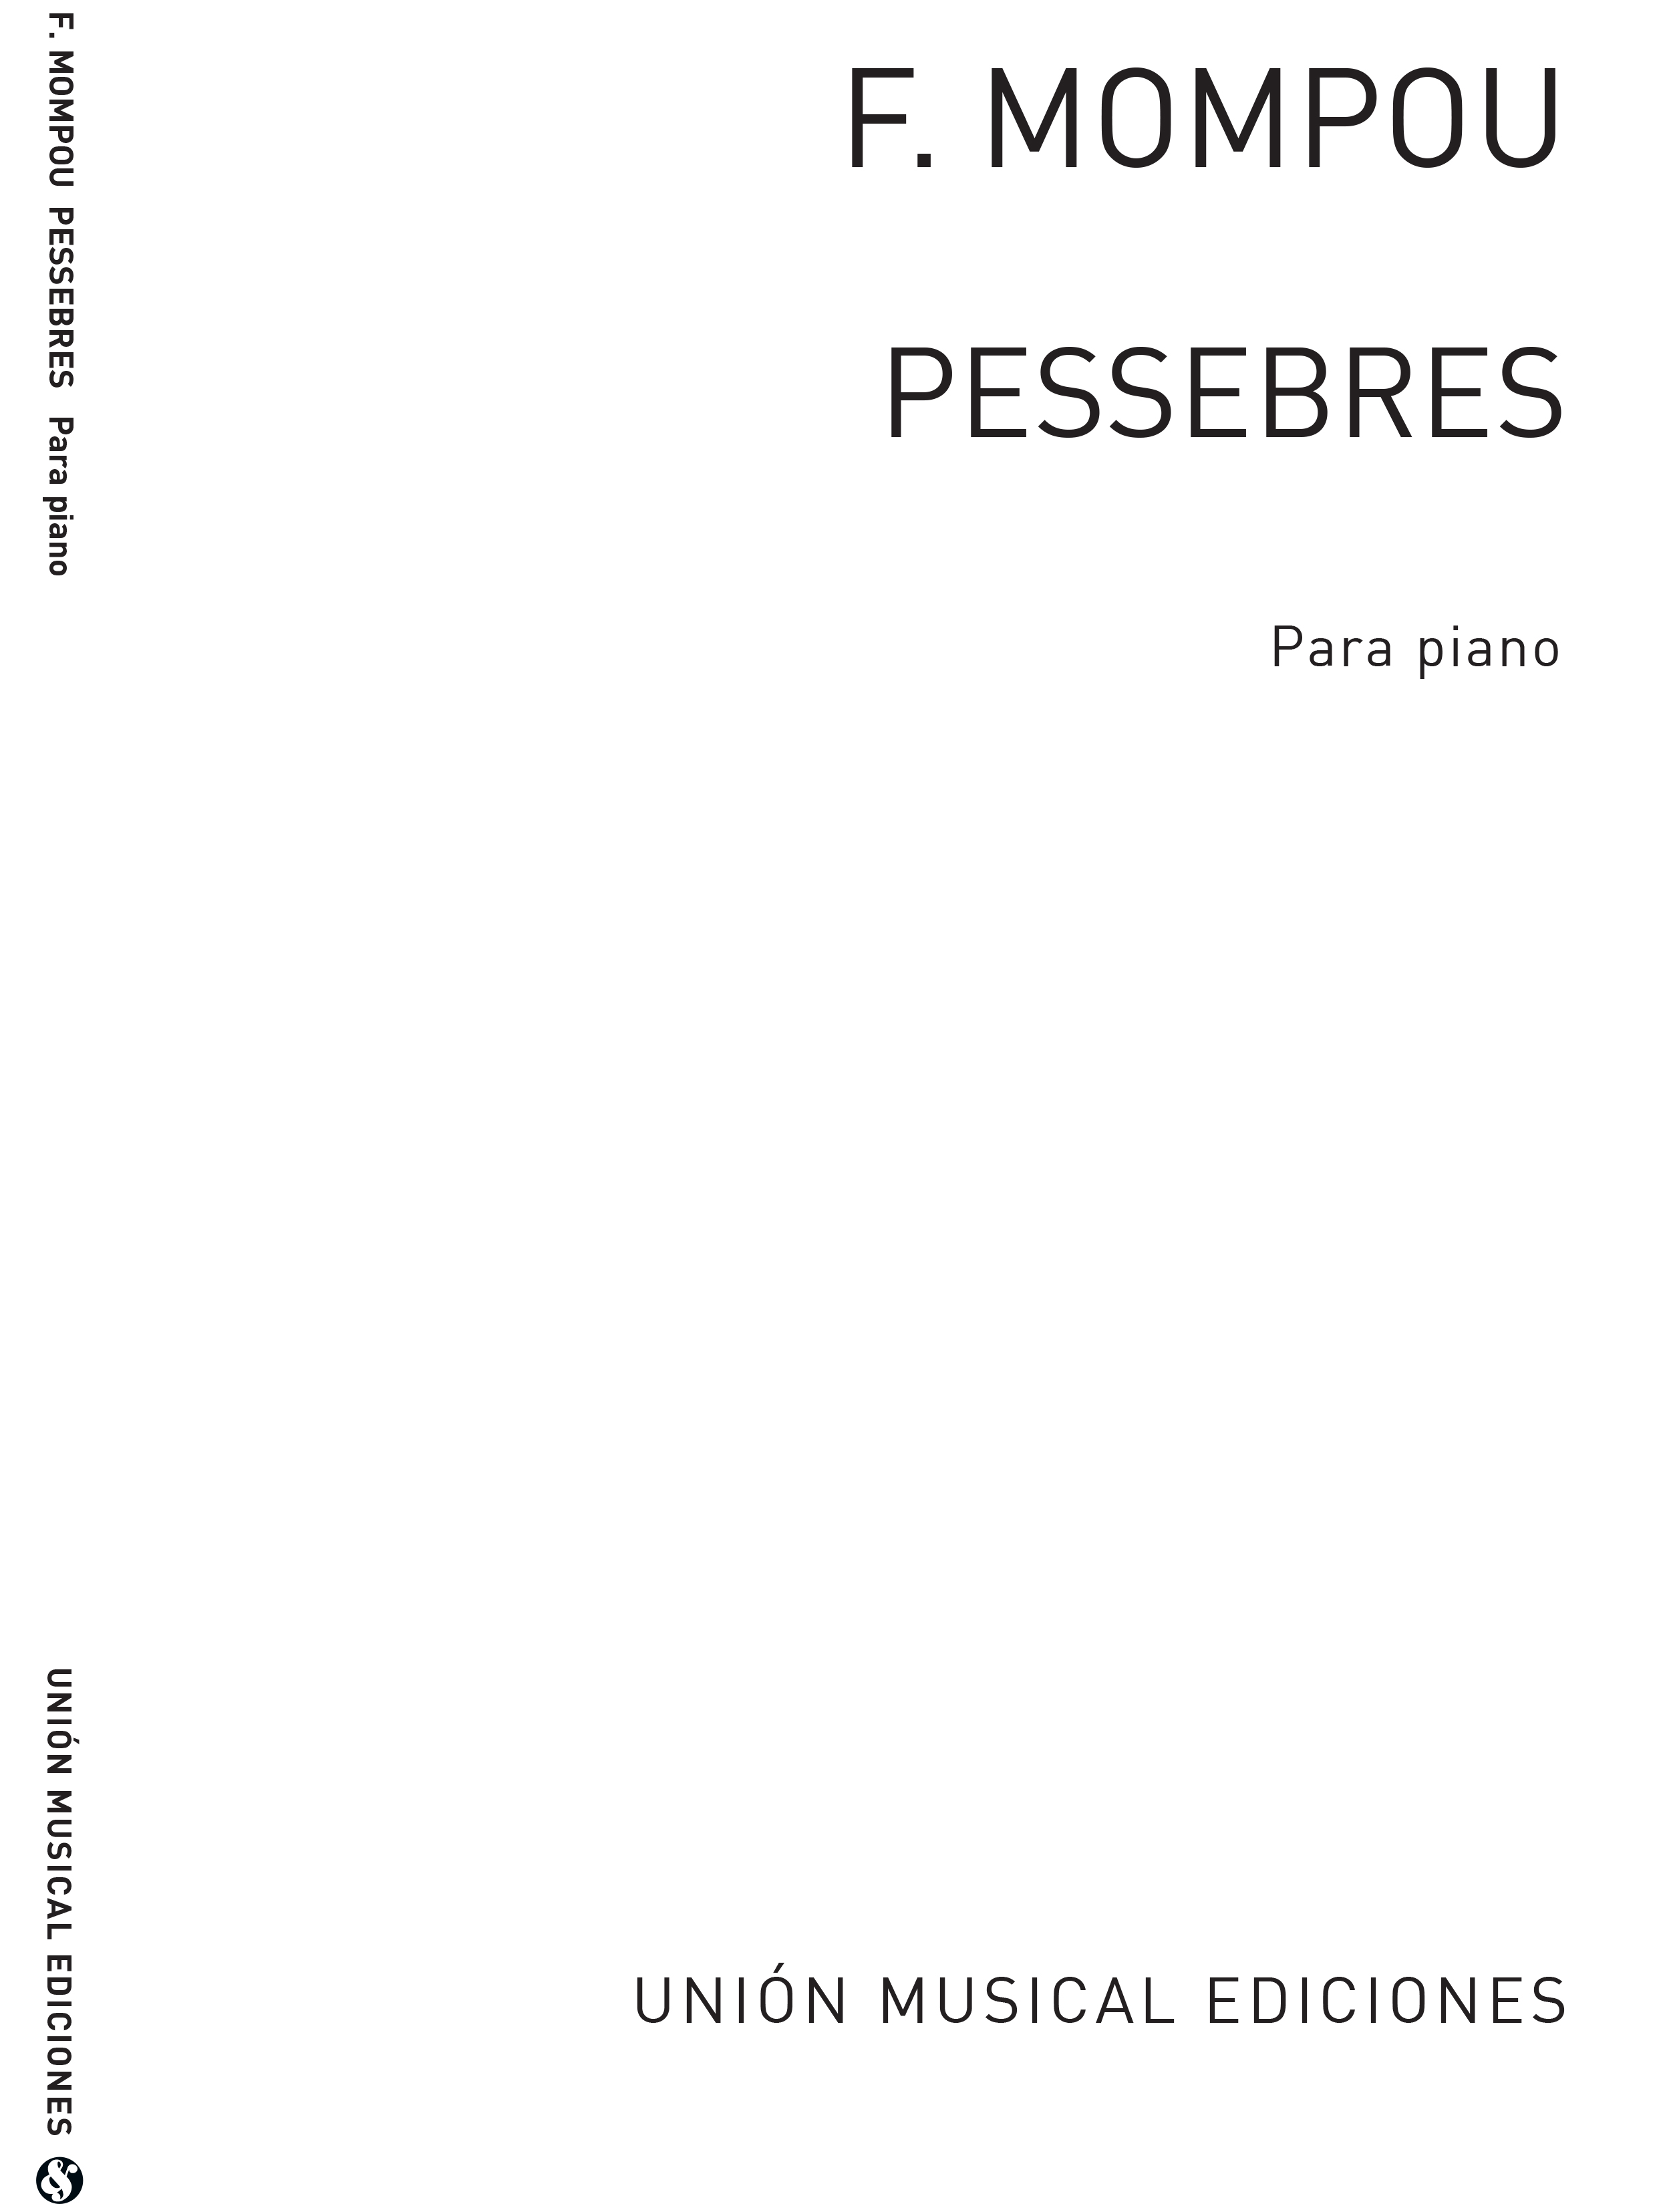 Frederic Mompou: Pessebres Piano: Piano: Instrumental Album